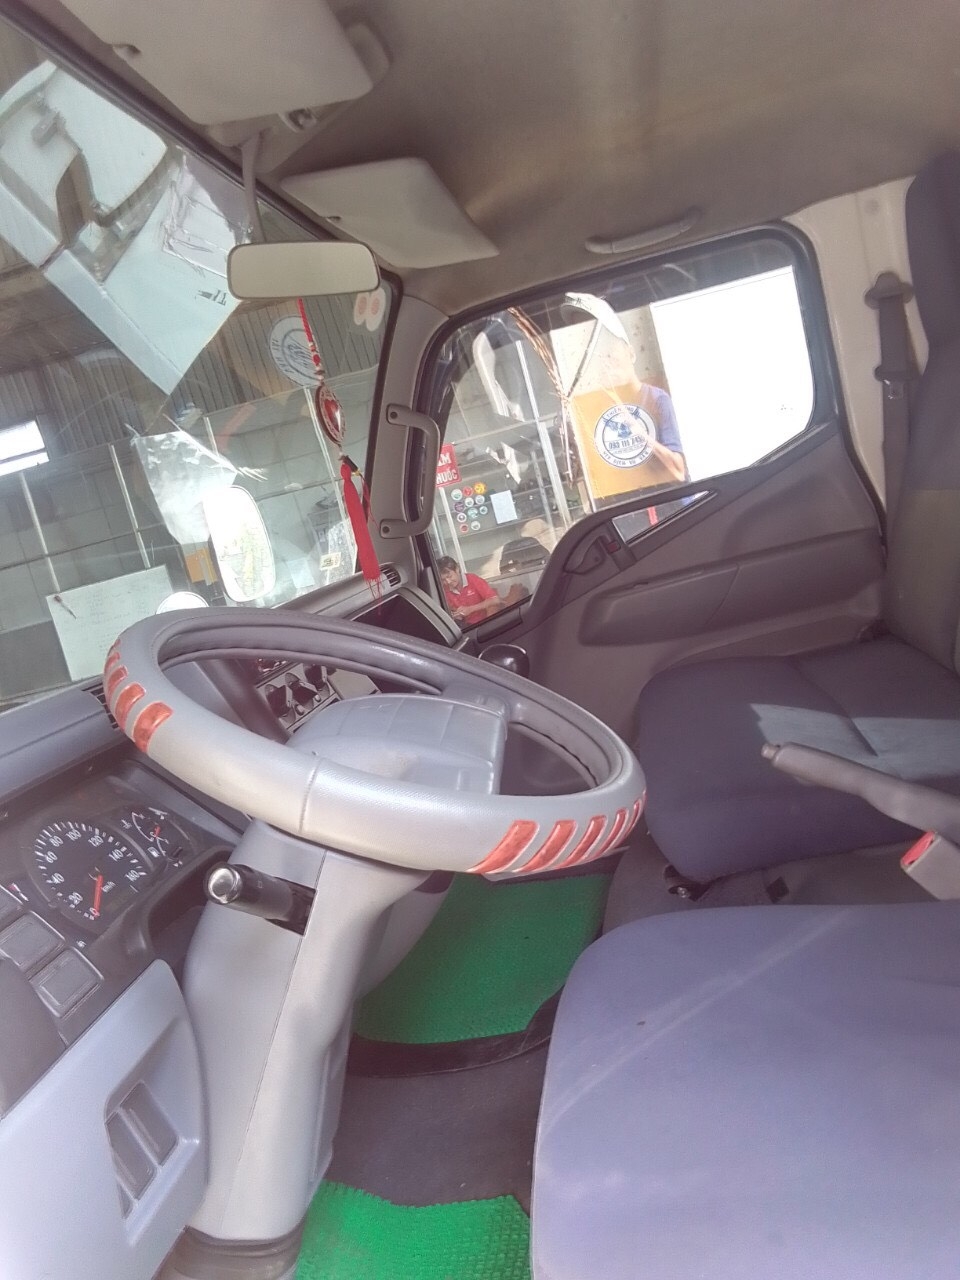 bán xe tải mitshubishi 3t5 đời 2012 thùng kín compusit